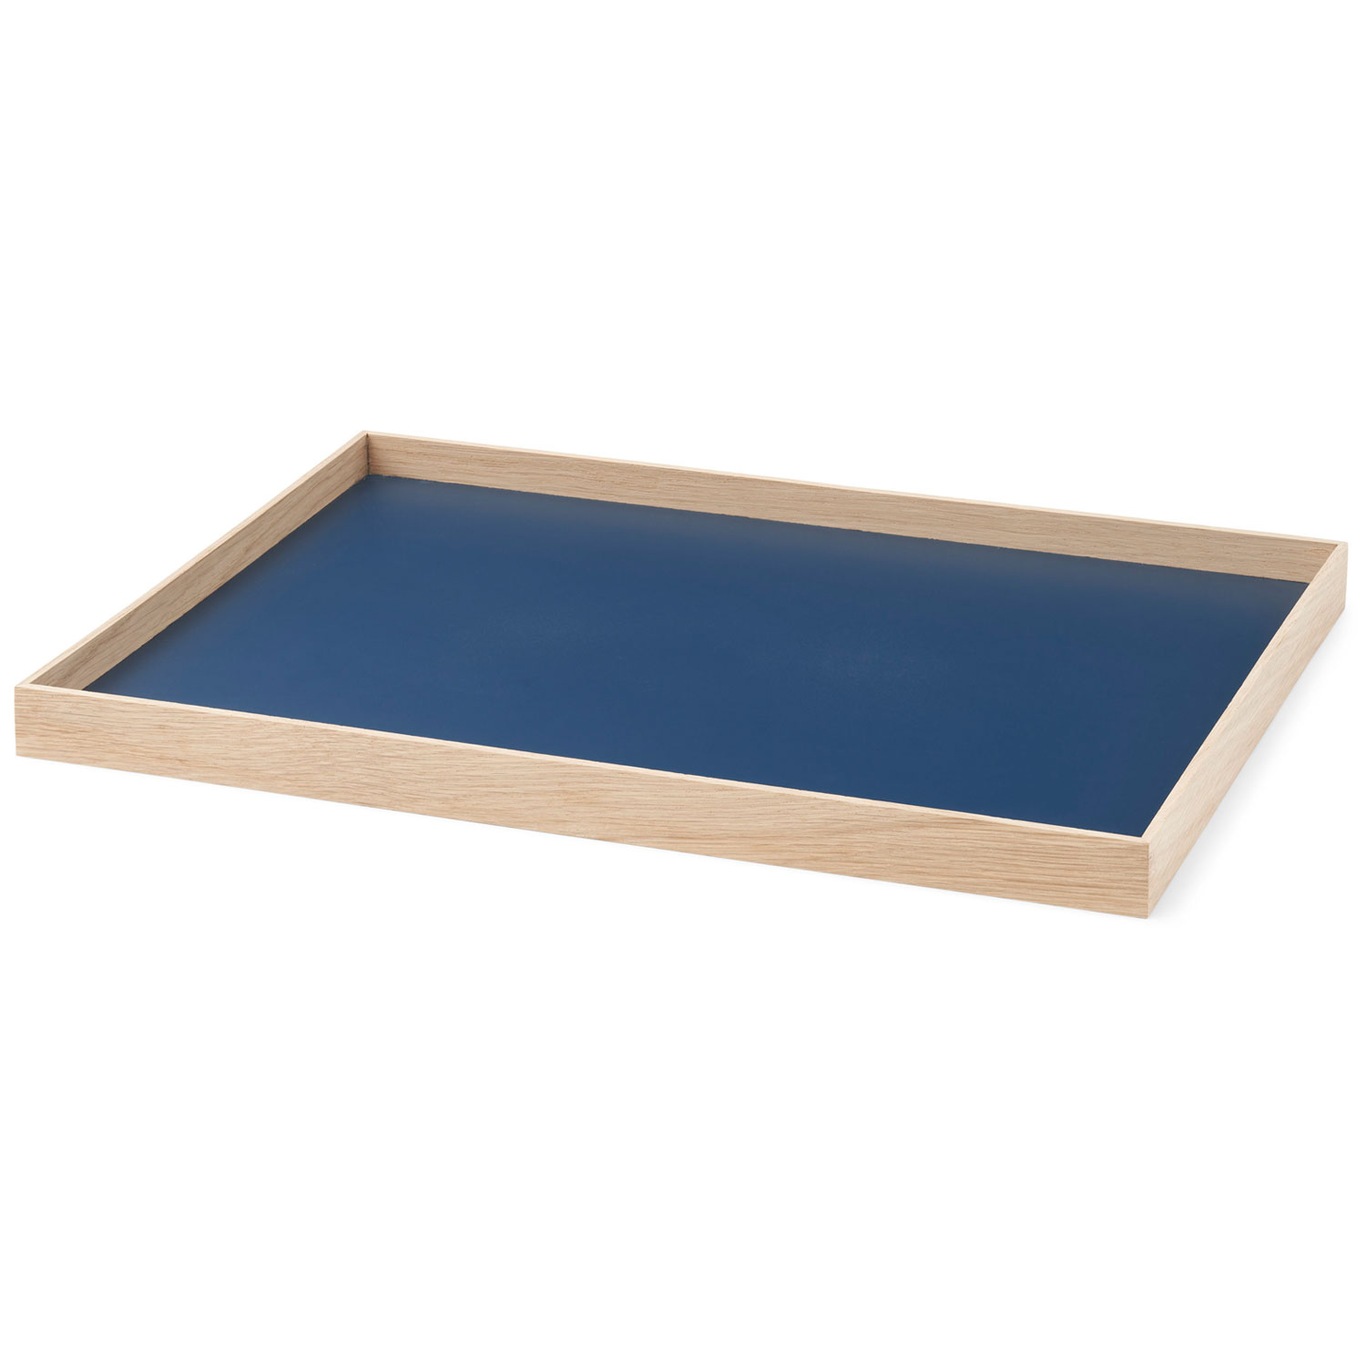 Frame Tray Oak / Blue Medium 34 x 23.2 cm